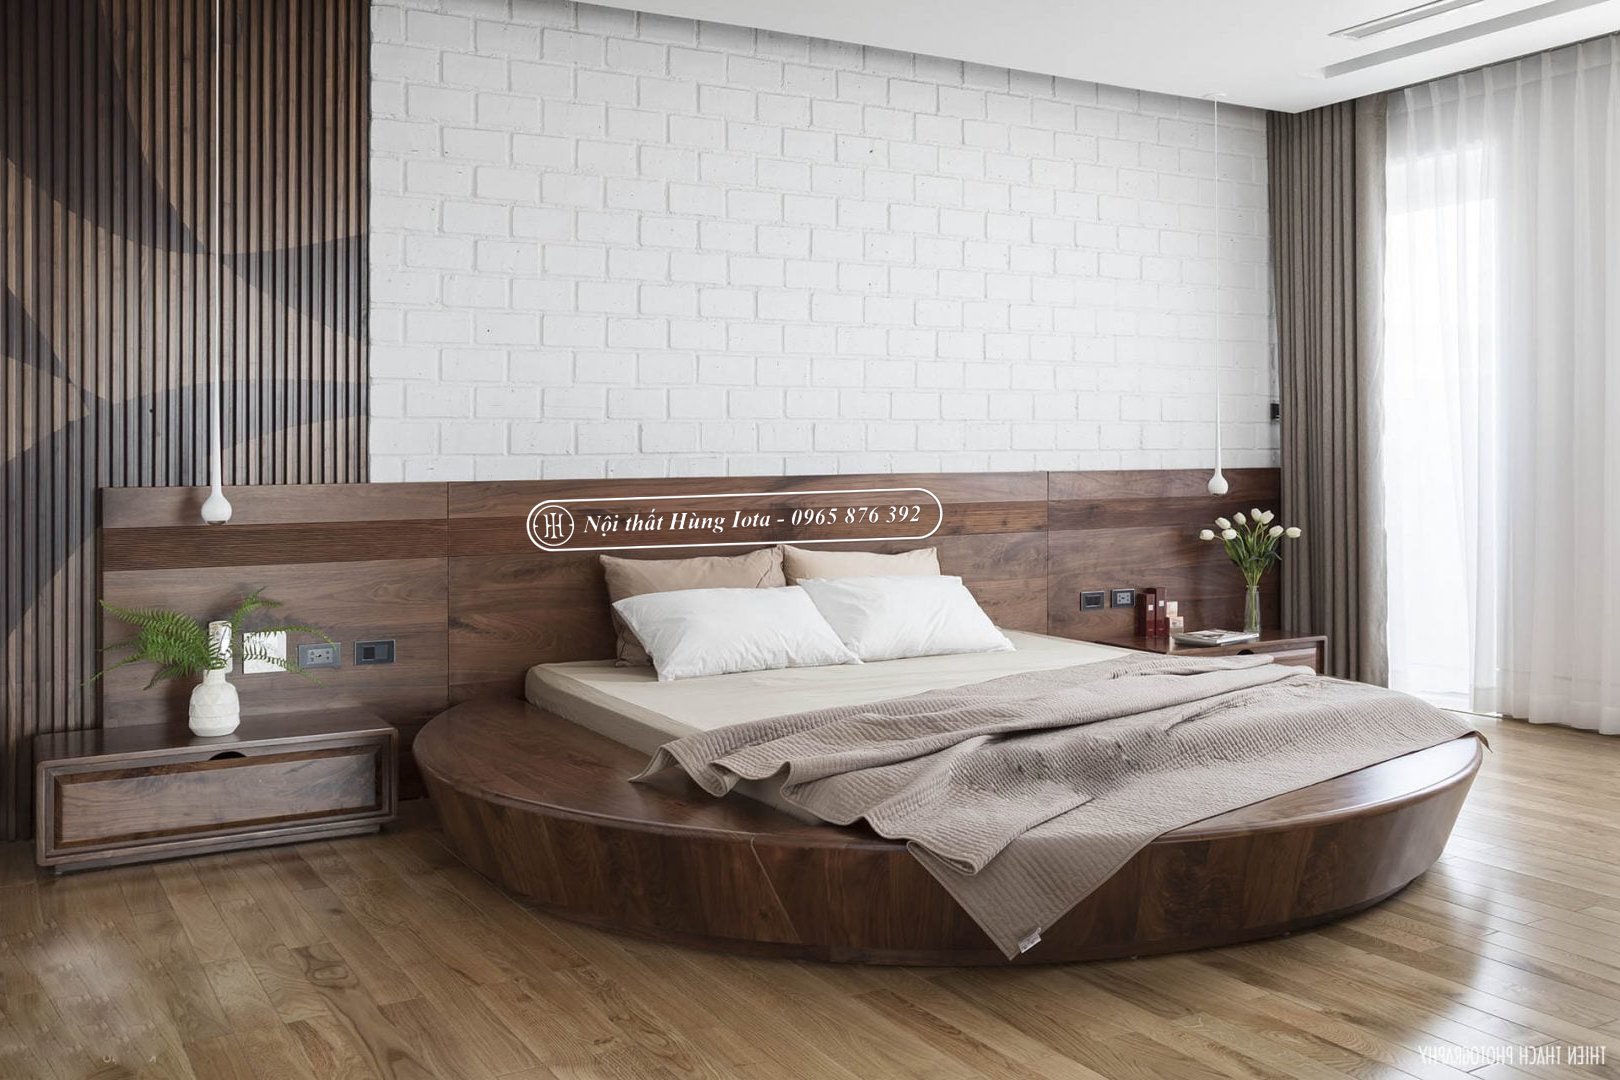 Giường ngủ gỗ óc chó hình tròn đẹp sang trọng